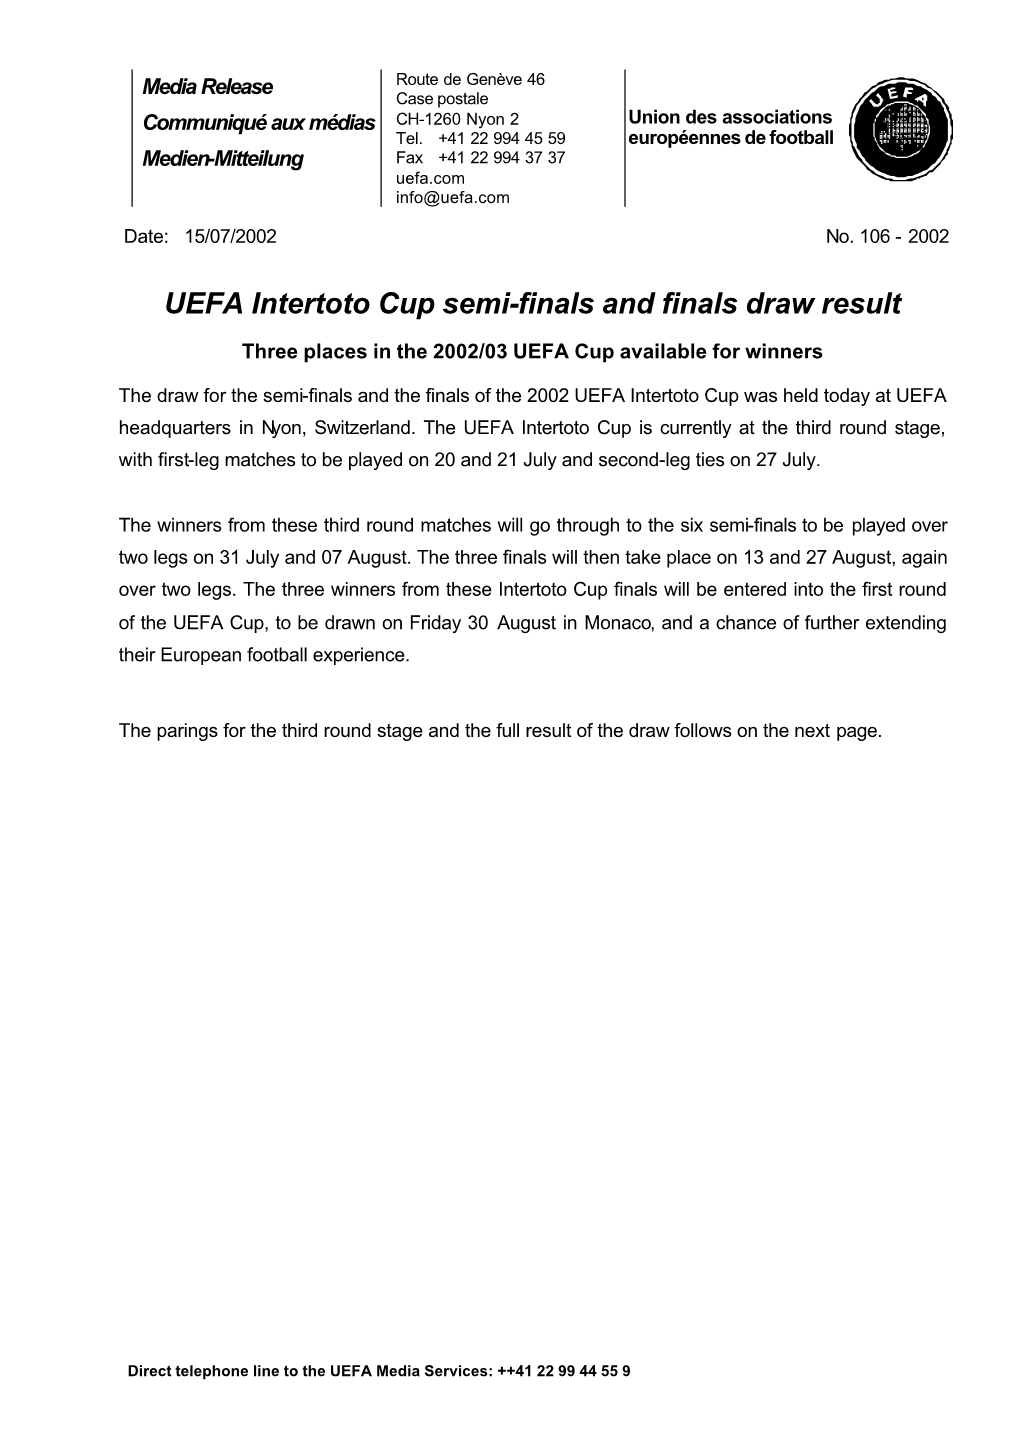 UEFA Intertoto Cup Semi-Finals and Finals Draw Result